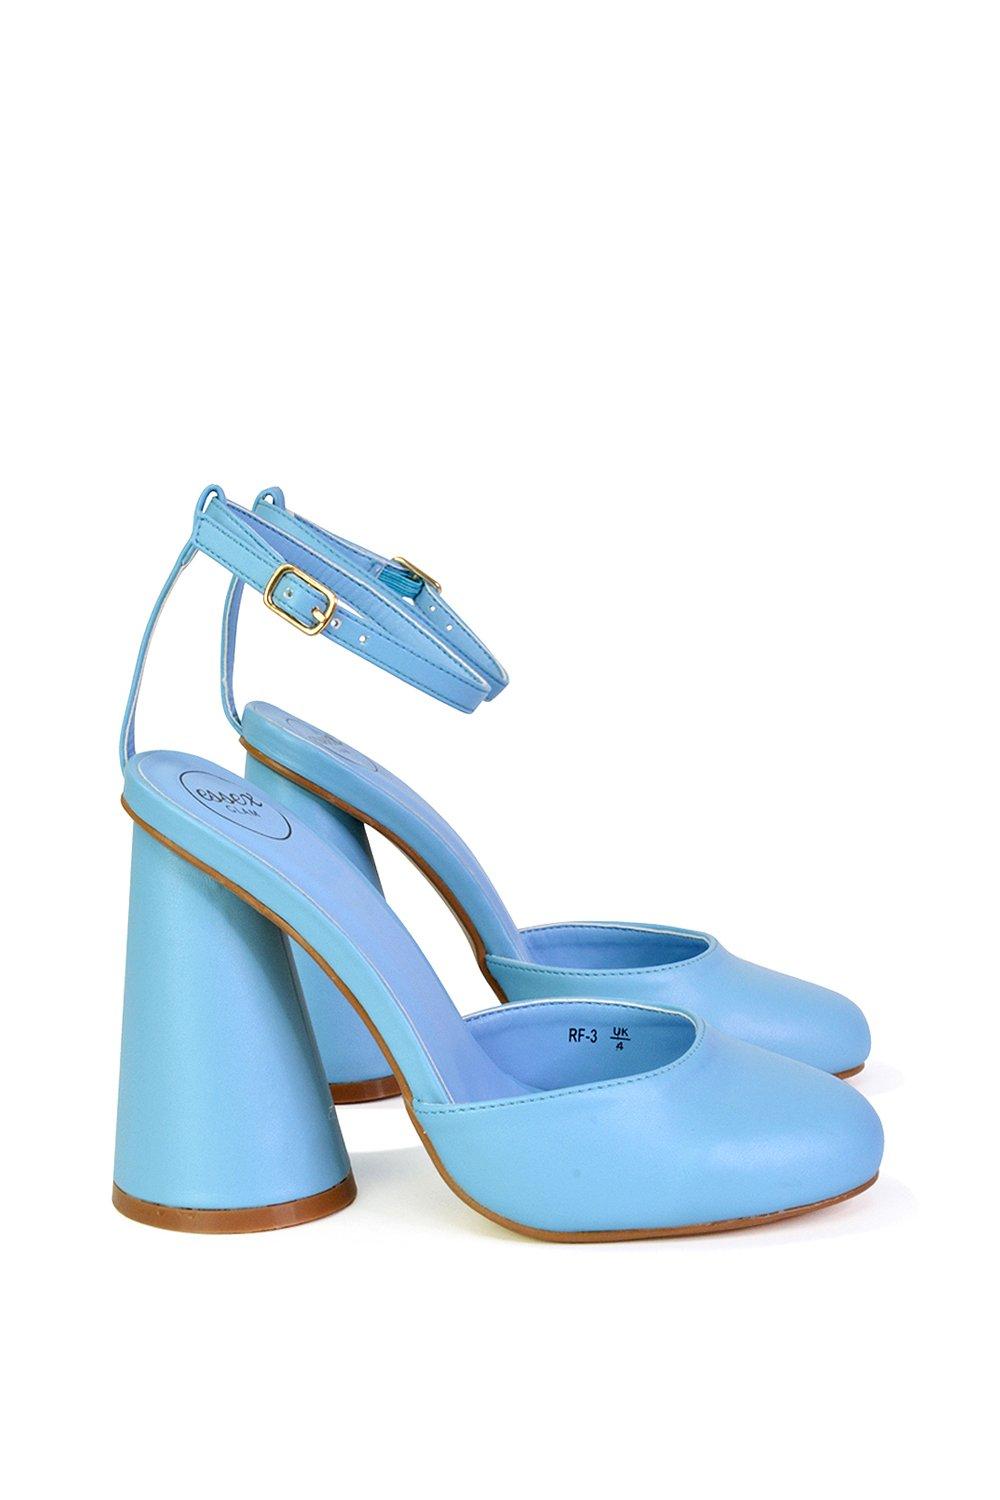 Эффектный каблук с блоком цилиндров и ремешком на щиколотке Ekin XY London, синий туфли на каблуках rosalia mule frye камень